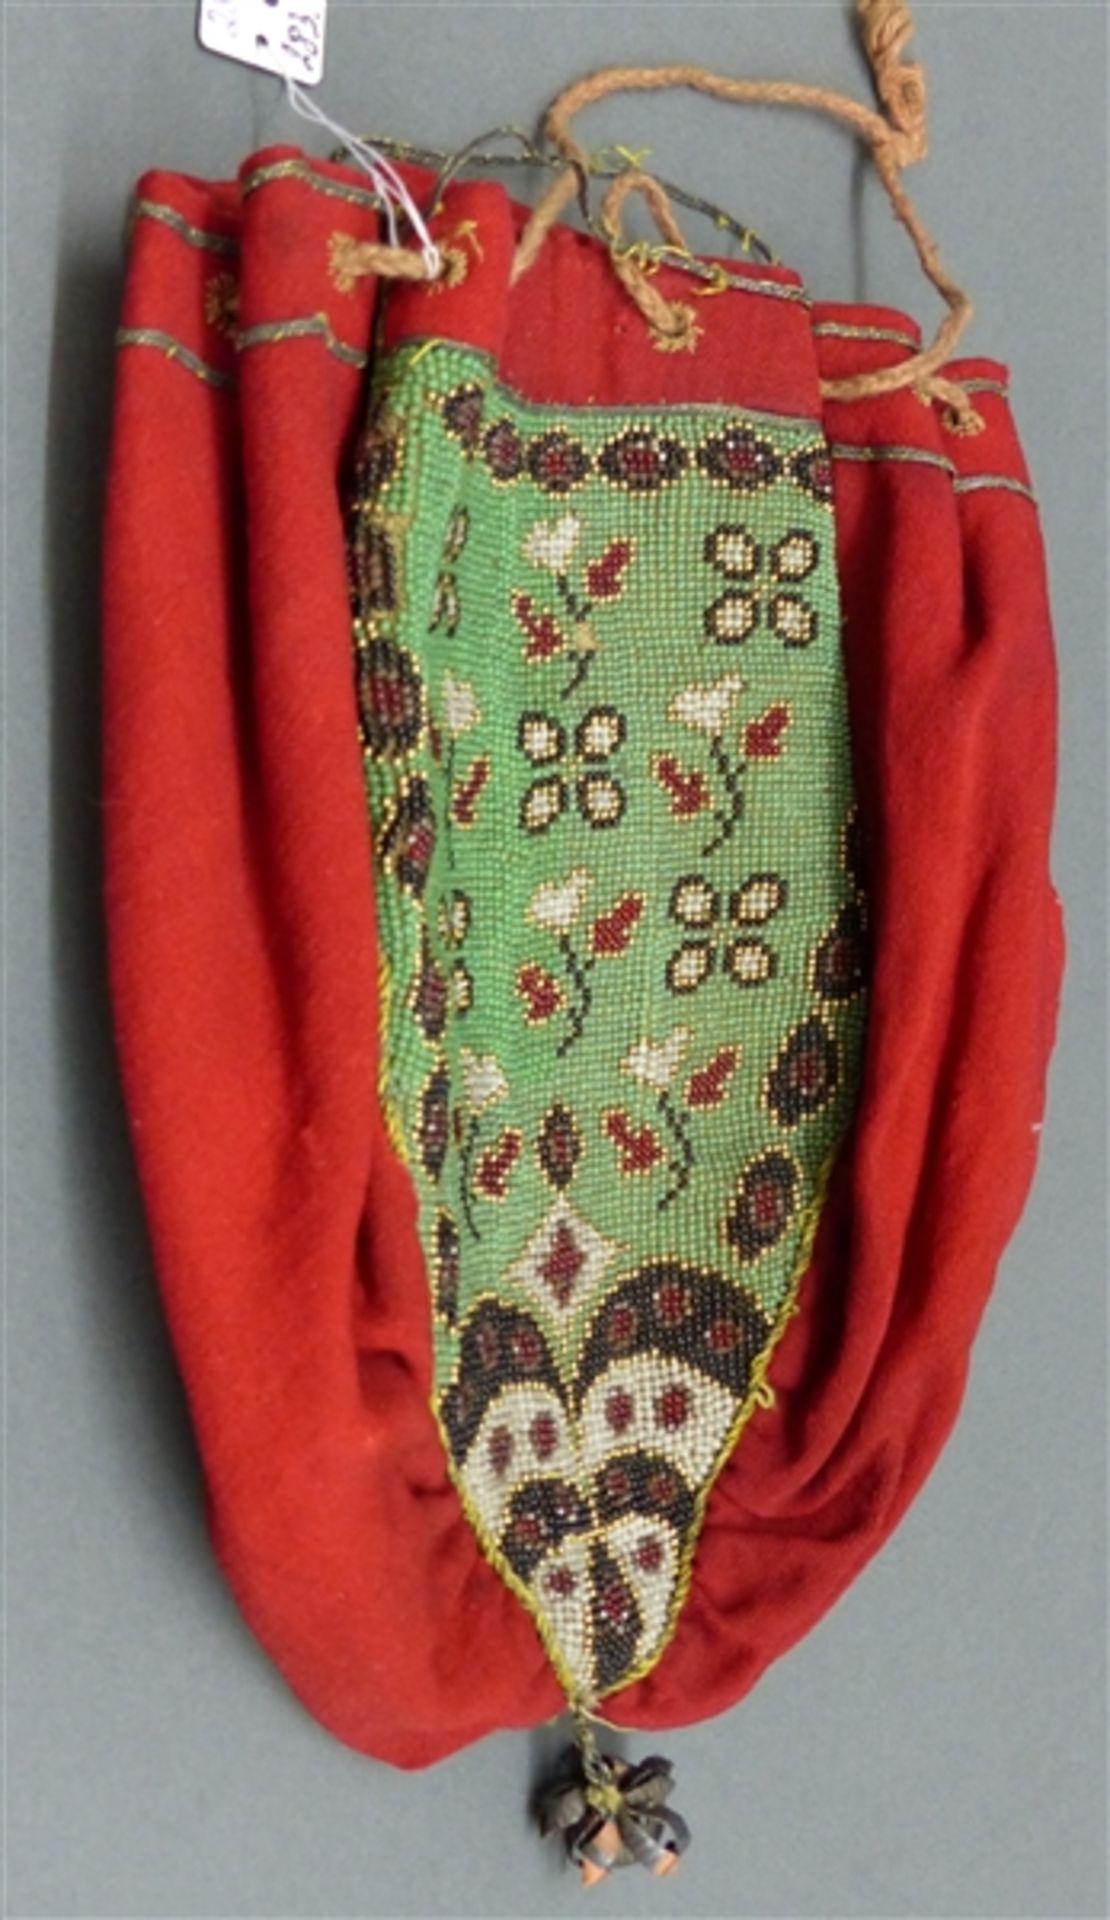 Stickbeutel, 19. Jh., Stoff mit Glasperlenarbeit, Blumendekor, teilweise beschädigt, h 20 cm,